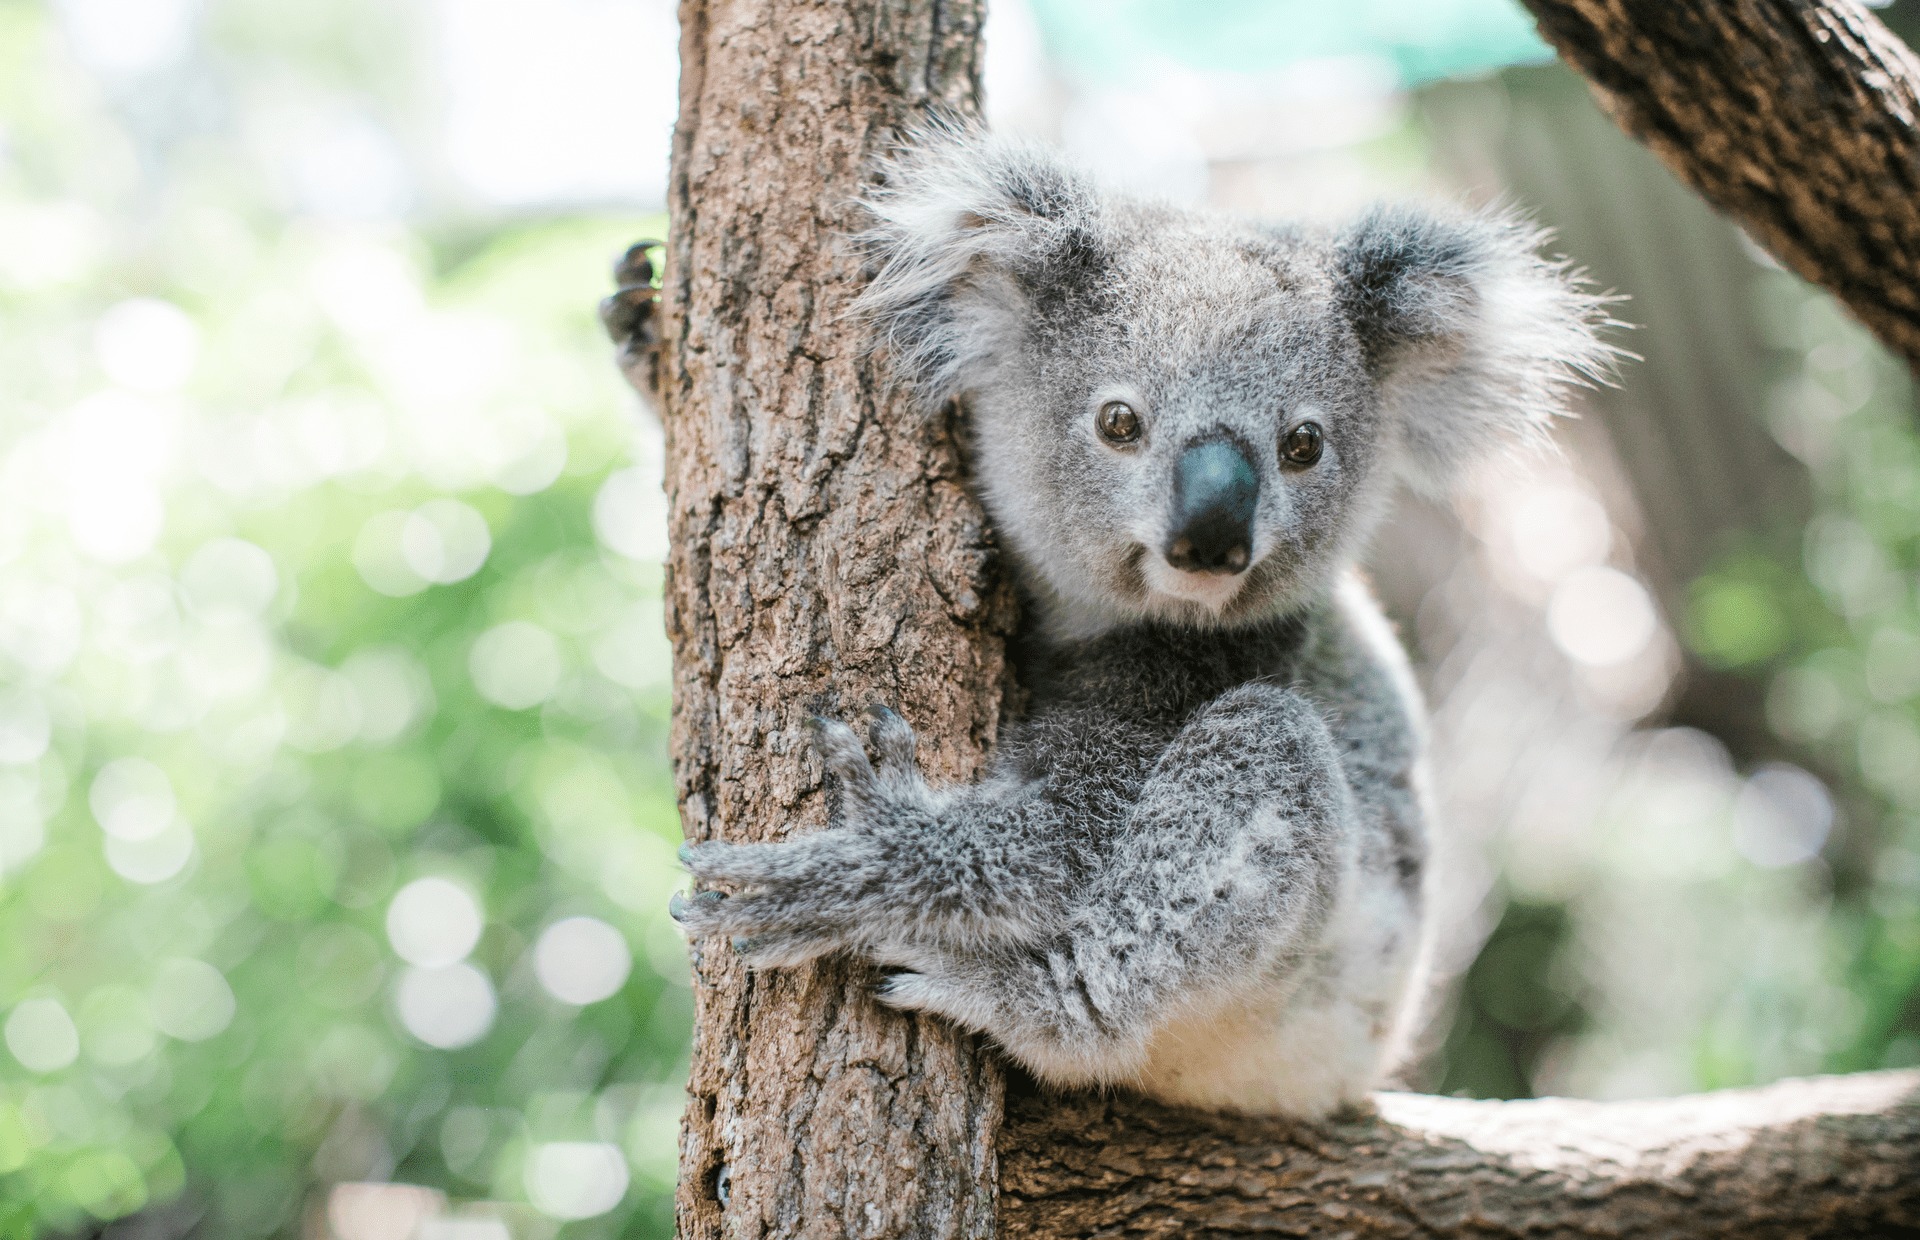 L’Australie classe officiellement le koala comme « en danger »